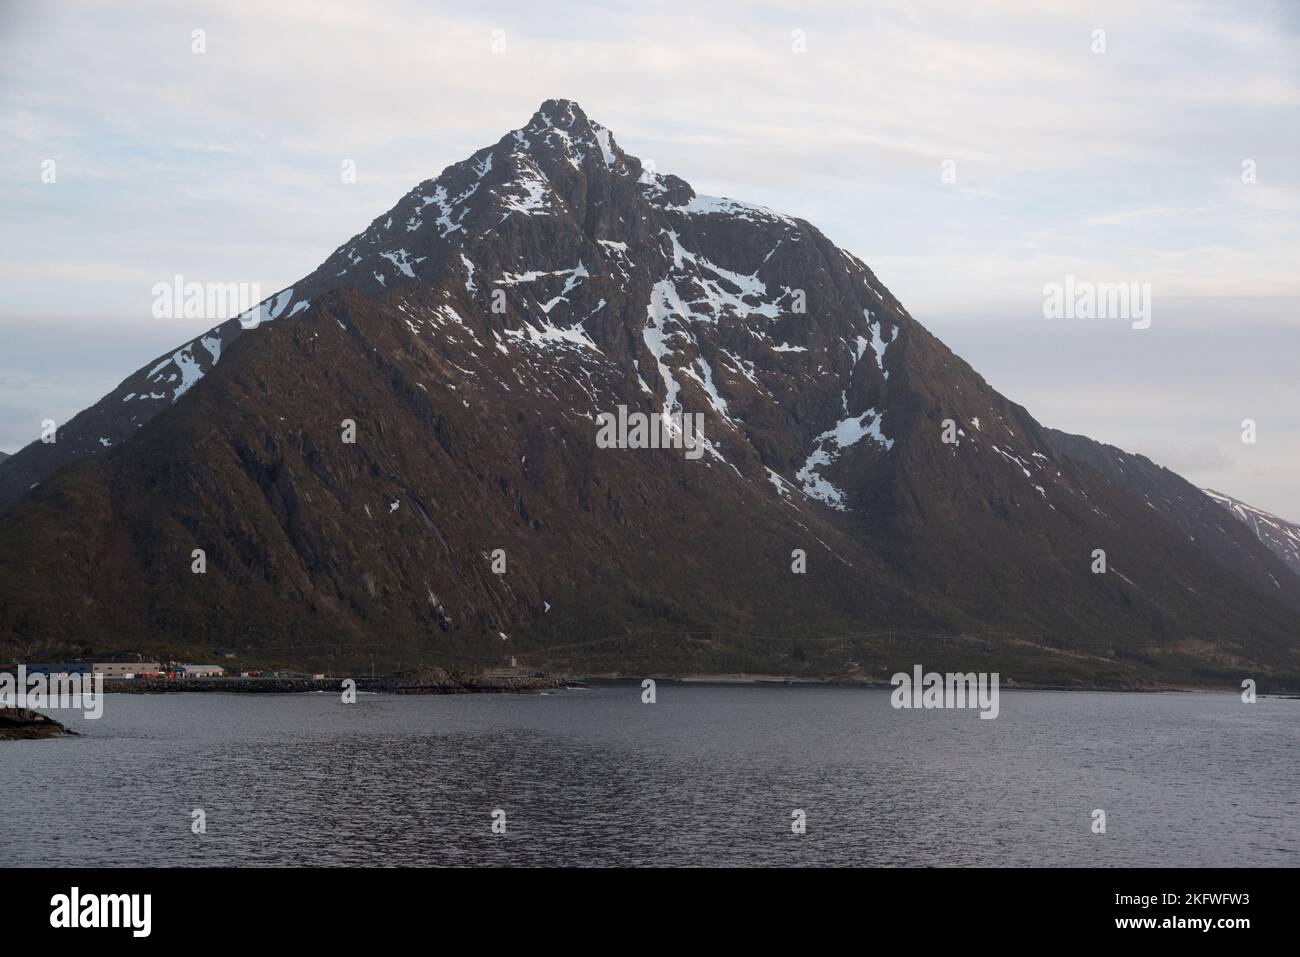 Austvågøya è la più grande isola dell'arcipelago delle Lofoten nella contea di Nordland, in Norvegia, coperta da aspre montagne che si trovano in acque fredde. Foto Stock